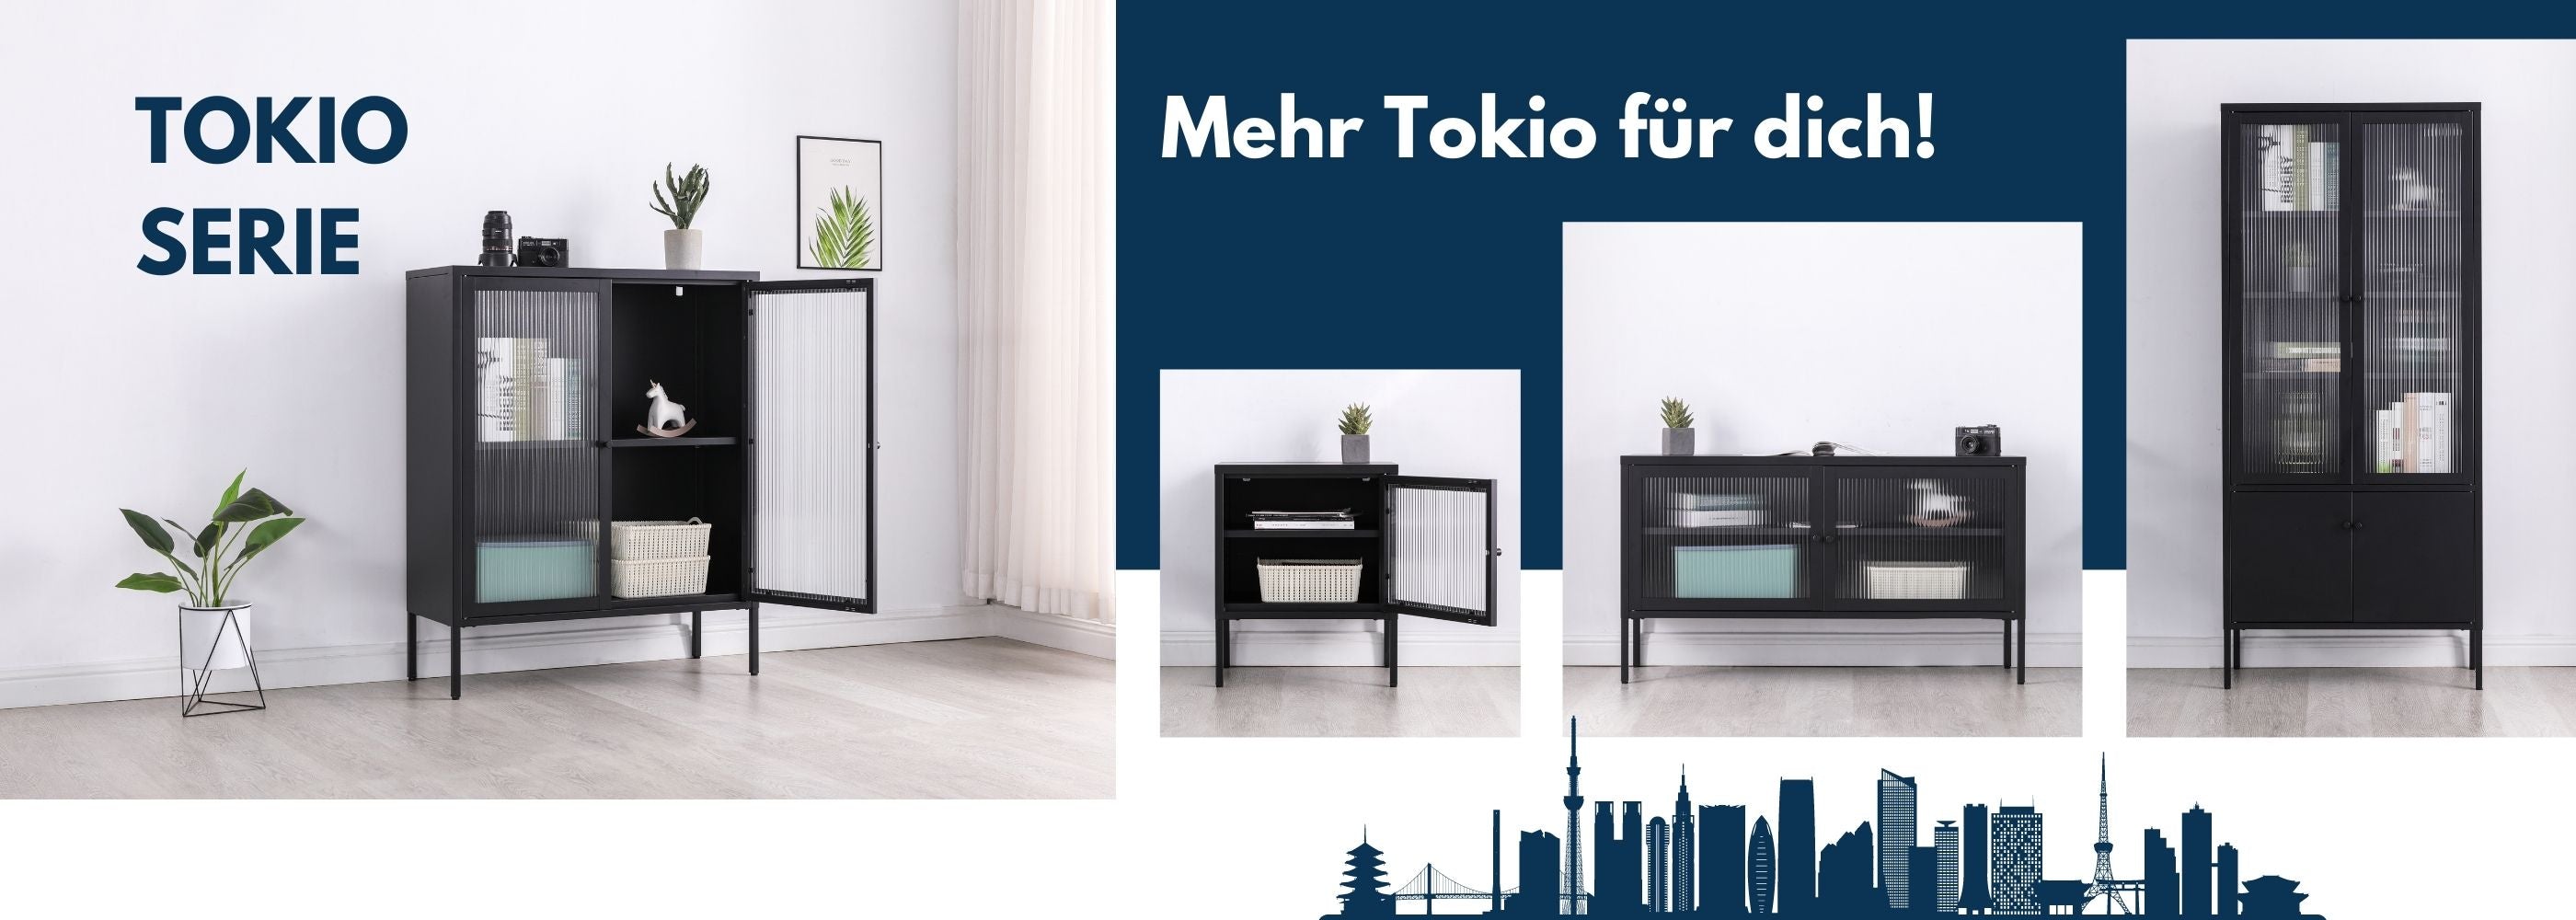 Die Möbelserie Tokio bietet moderne Metallmöbel, Vitrinen, Highboards, Sideboards und Nachttische für stilvolle Raumgestaltung.